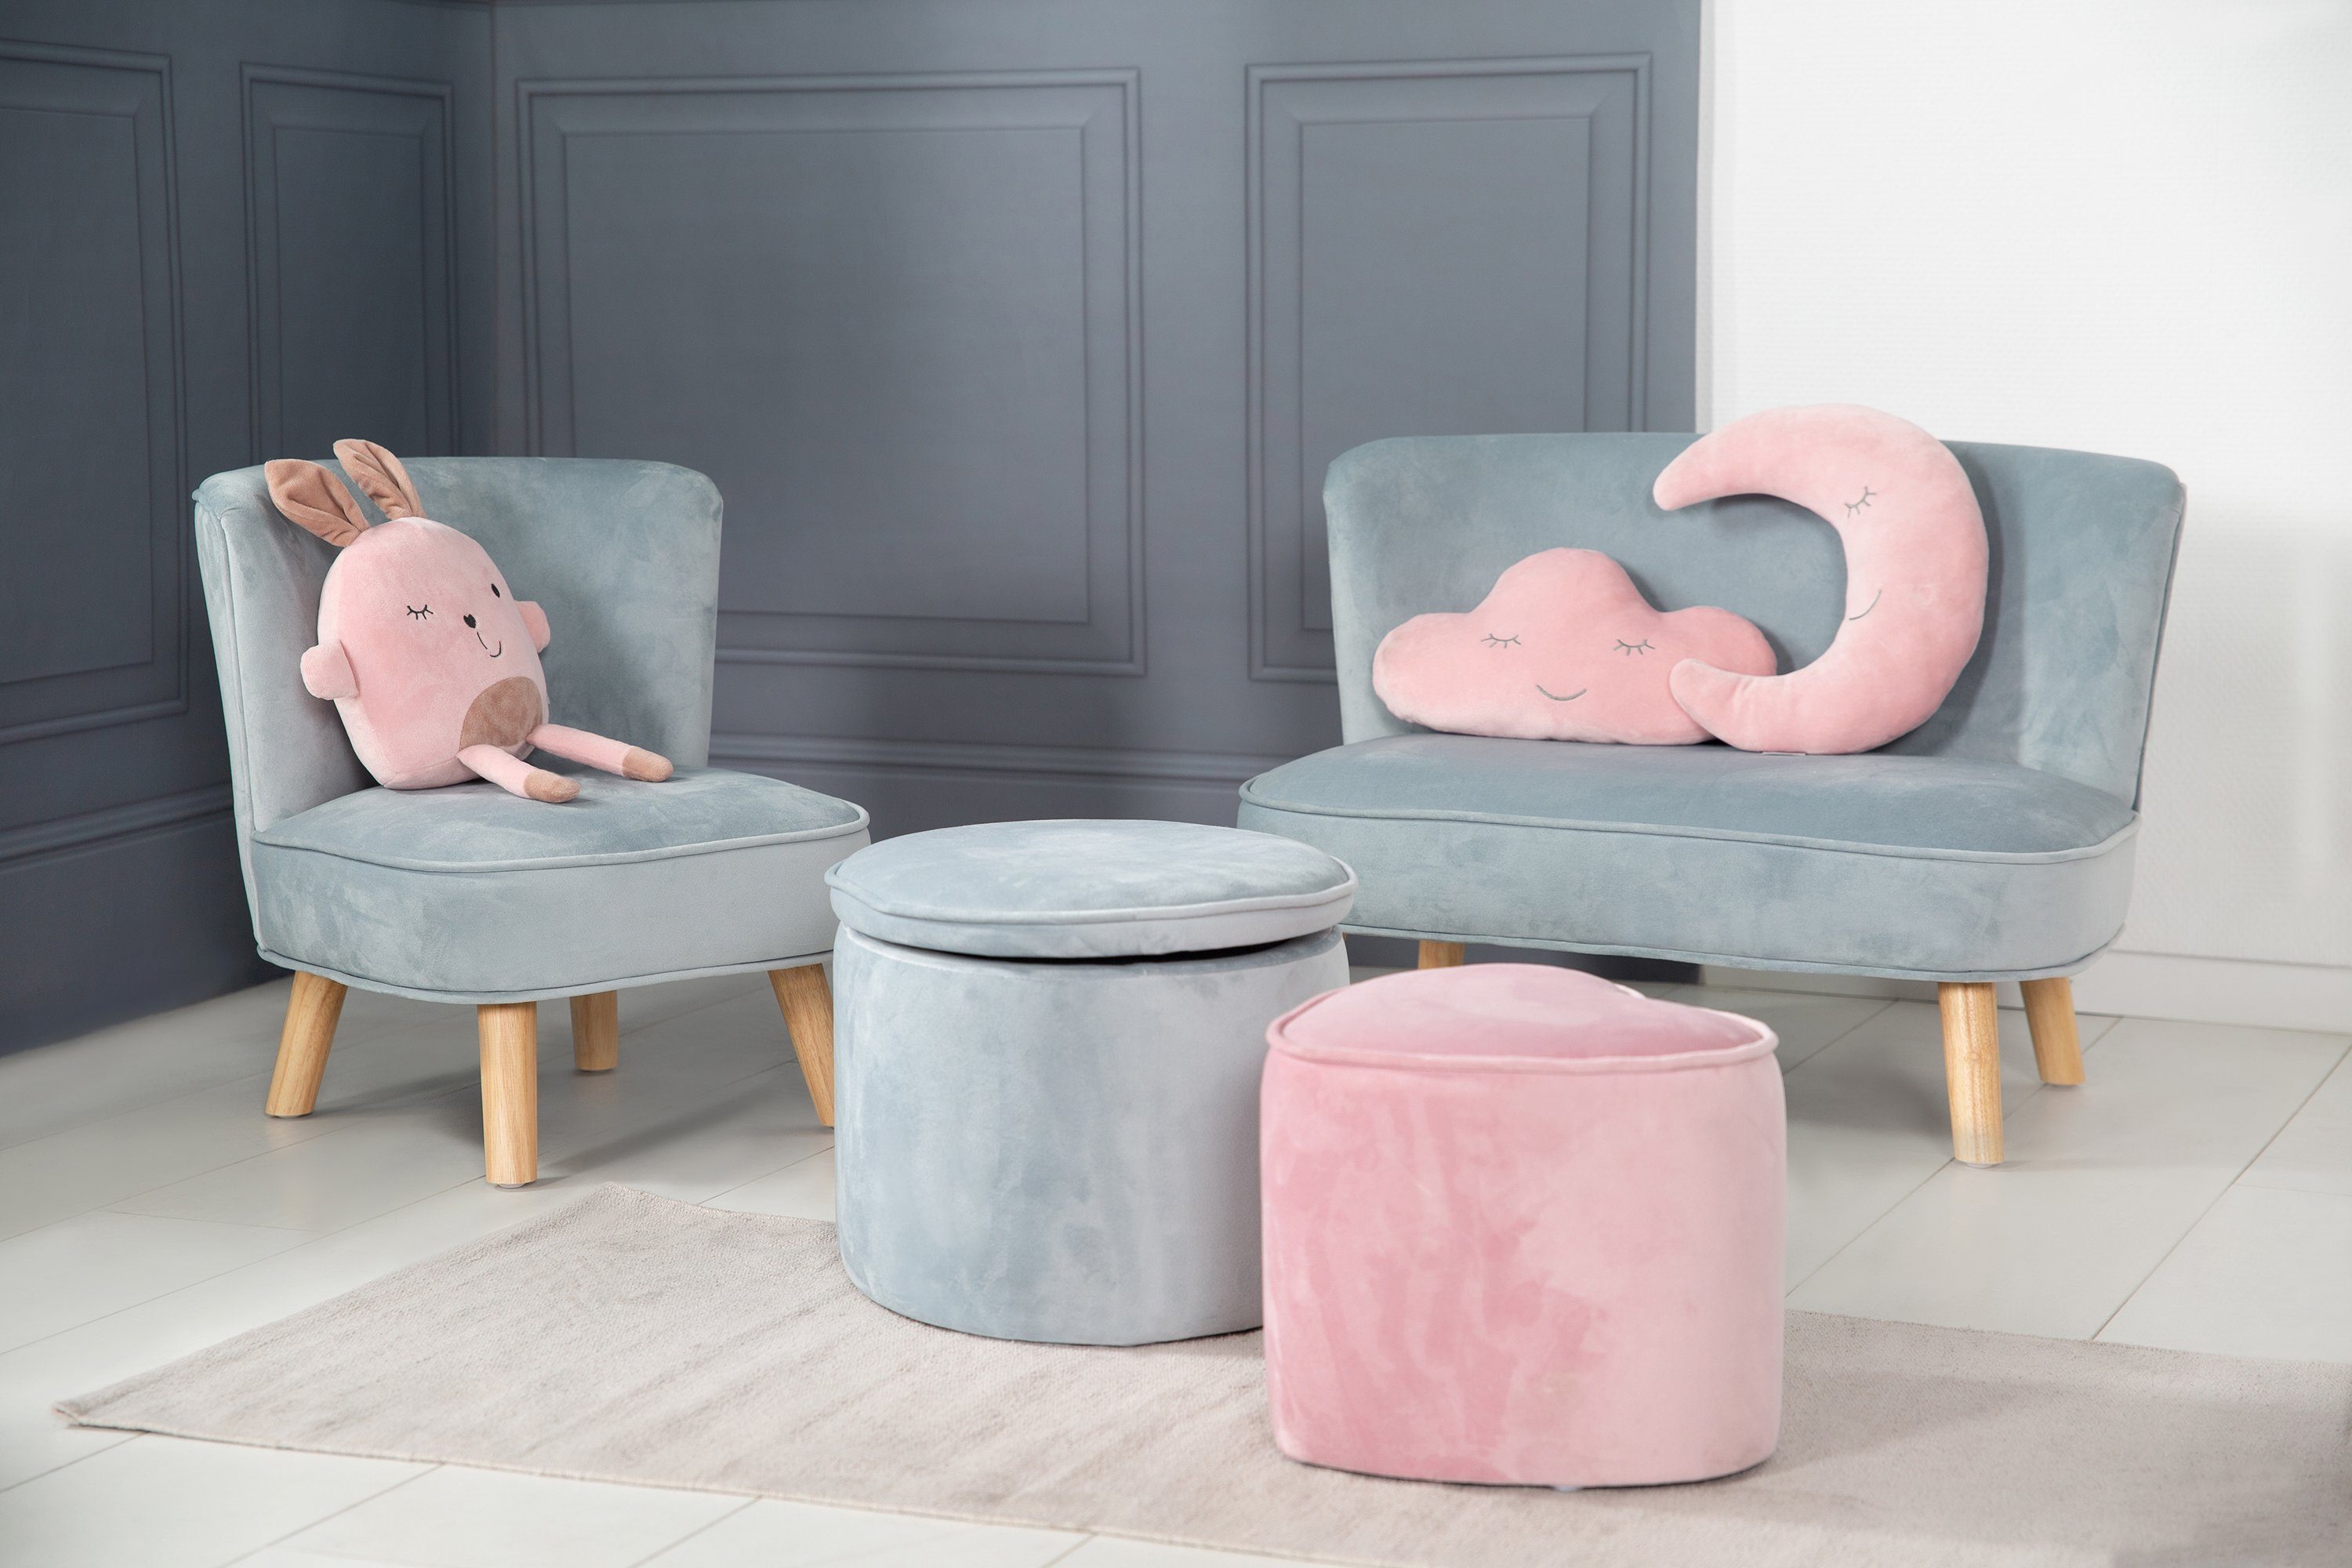 roba® Sessel Lil hellblau/sky mit Holzfüßen Sofa